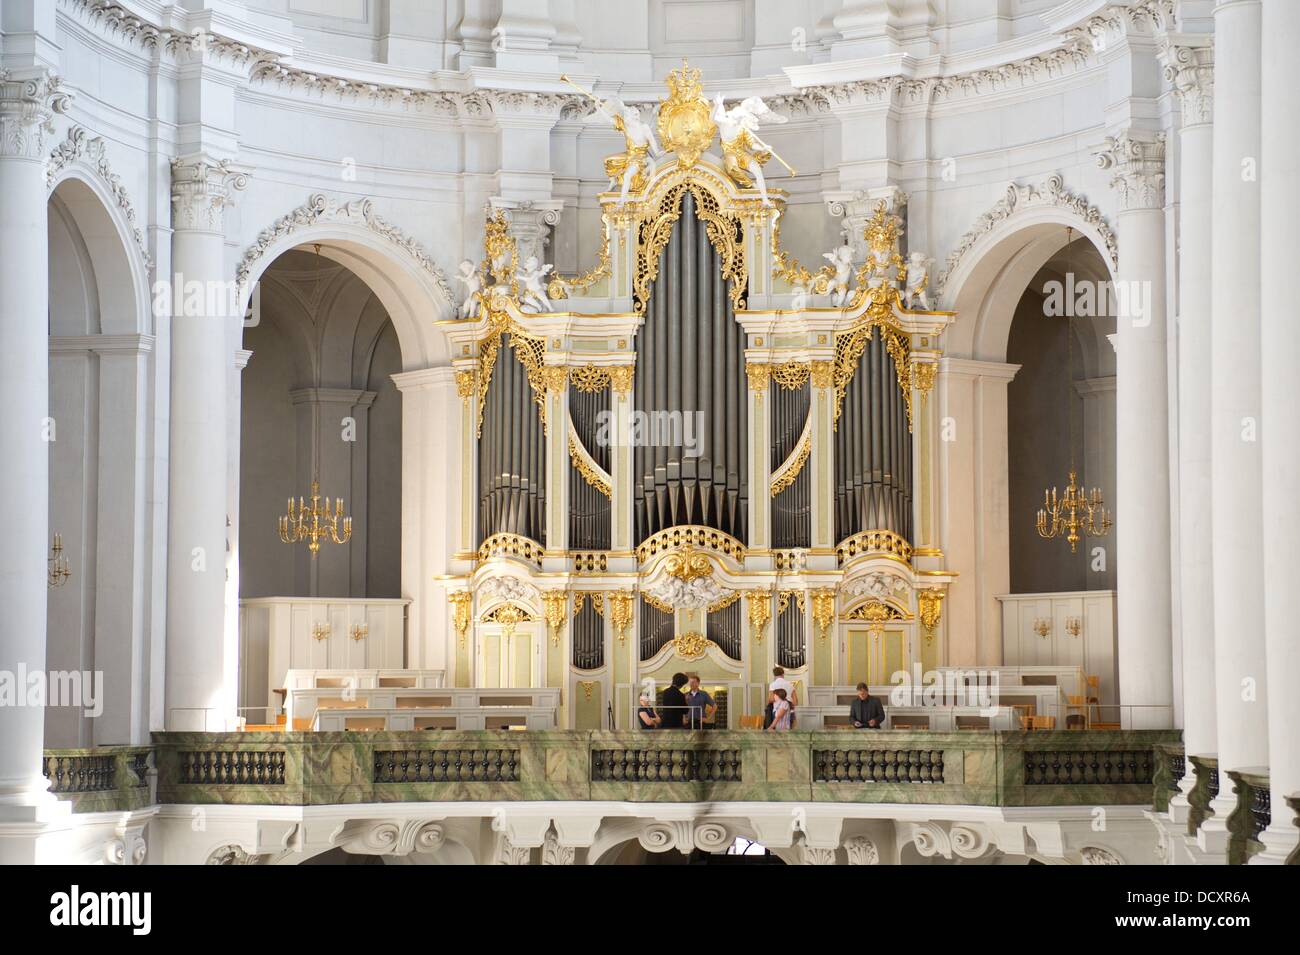 Vista dell'organo Silbermann nella cattedrale di Dresda, in Germania, il 22 agosto 2013. Il ventesimo Silbermann Giorni, che si svolgerà dal 04 al 15 settembre, la messa a fuoco di organi a canne del famoso produttore tedesco di organi a canne Gottfried Silbermann (1683-1753). Foto: Sebastian Kahnert Foto Stock